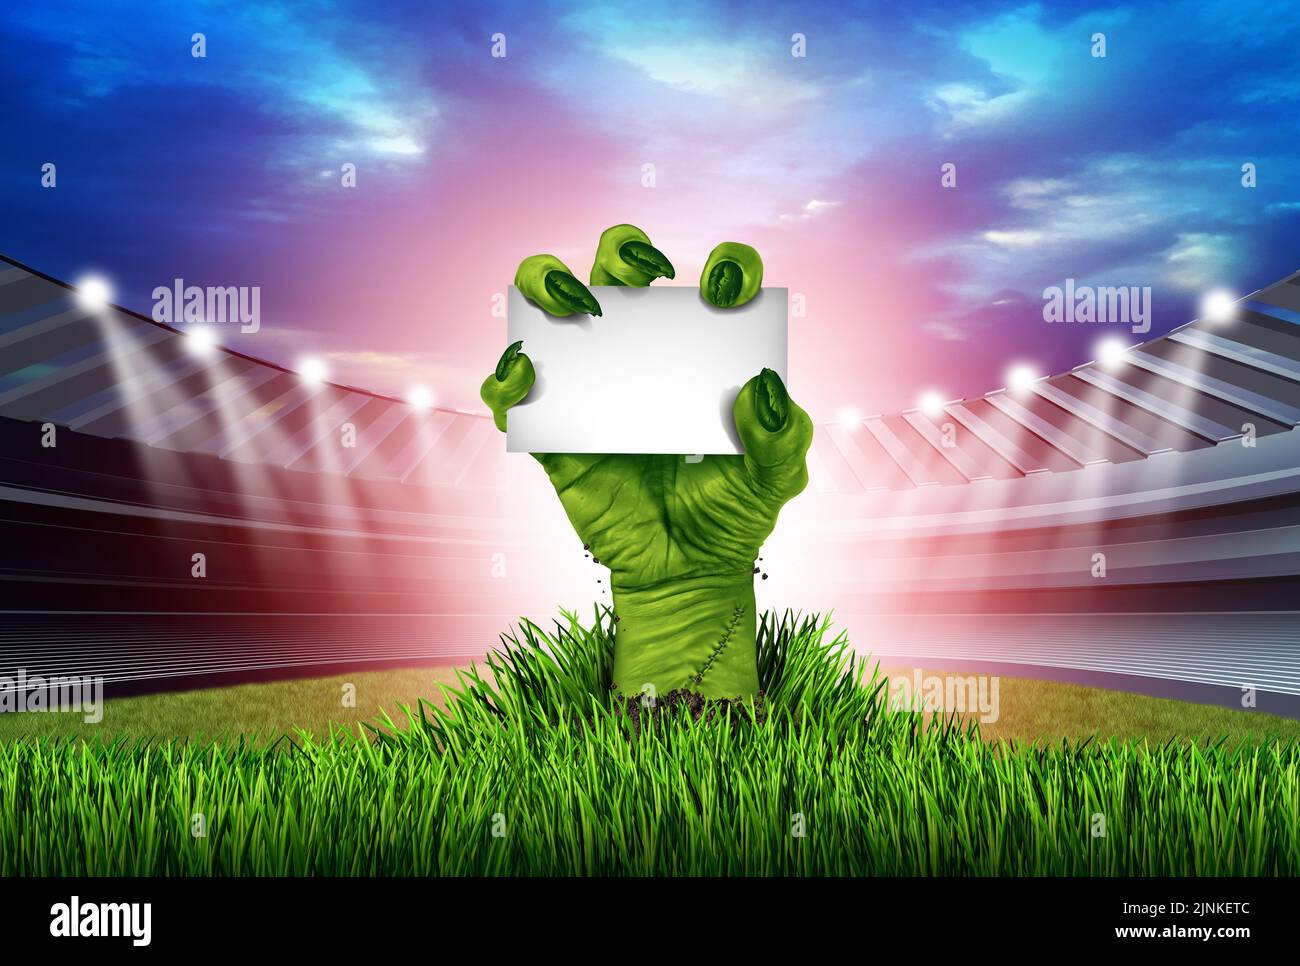 Mano zombie elevándose desde un estadio de hierba como símbolo del evento deportivo de Halloween o anuncio de temporada con 3D elementos ilustrativos. Foto de stock